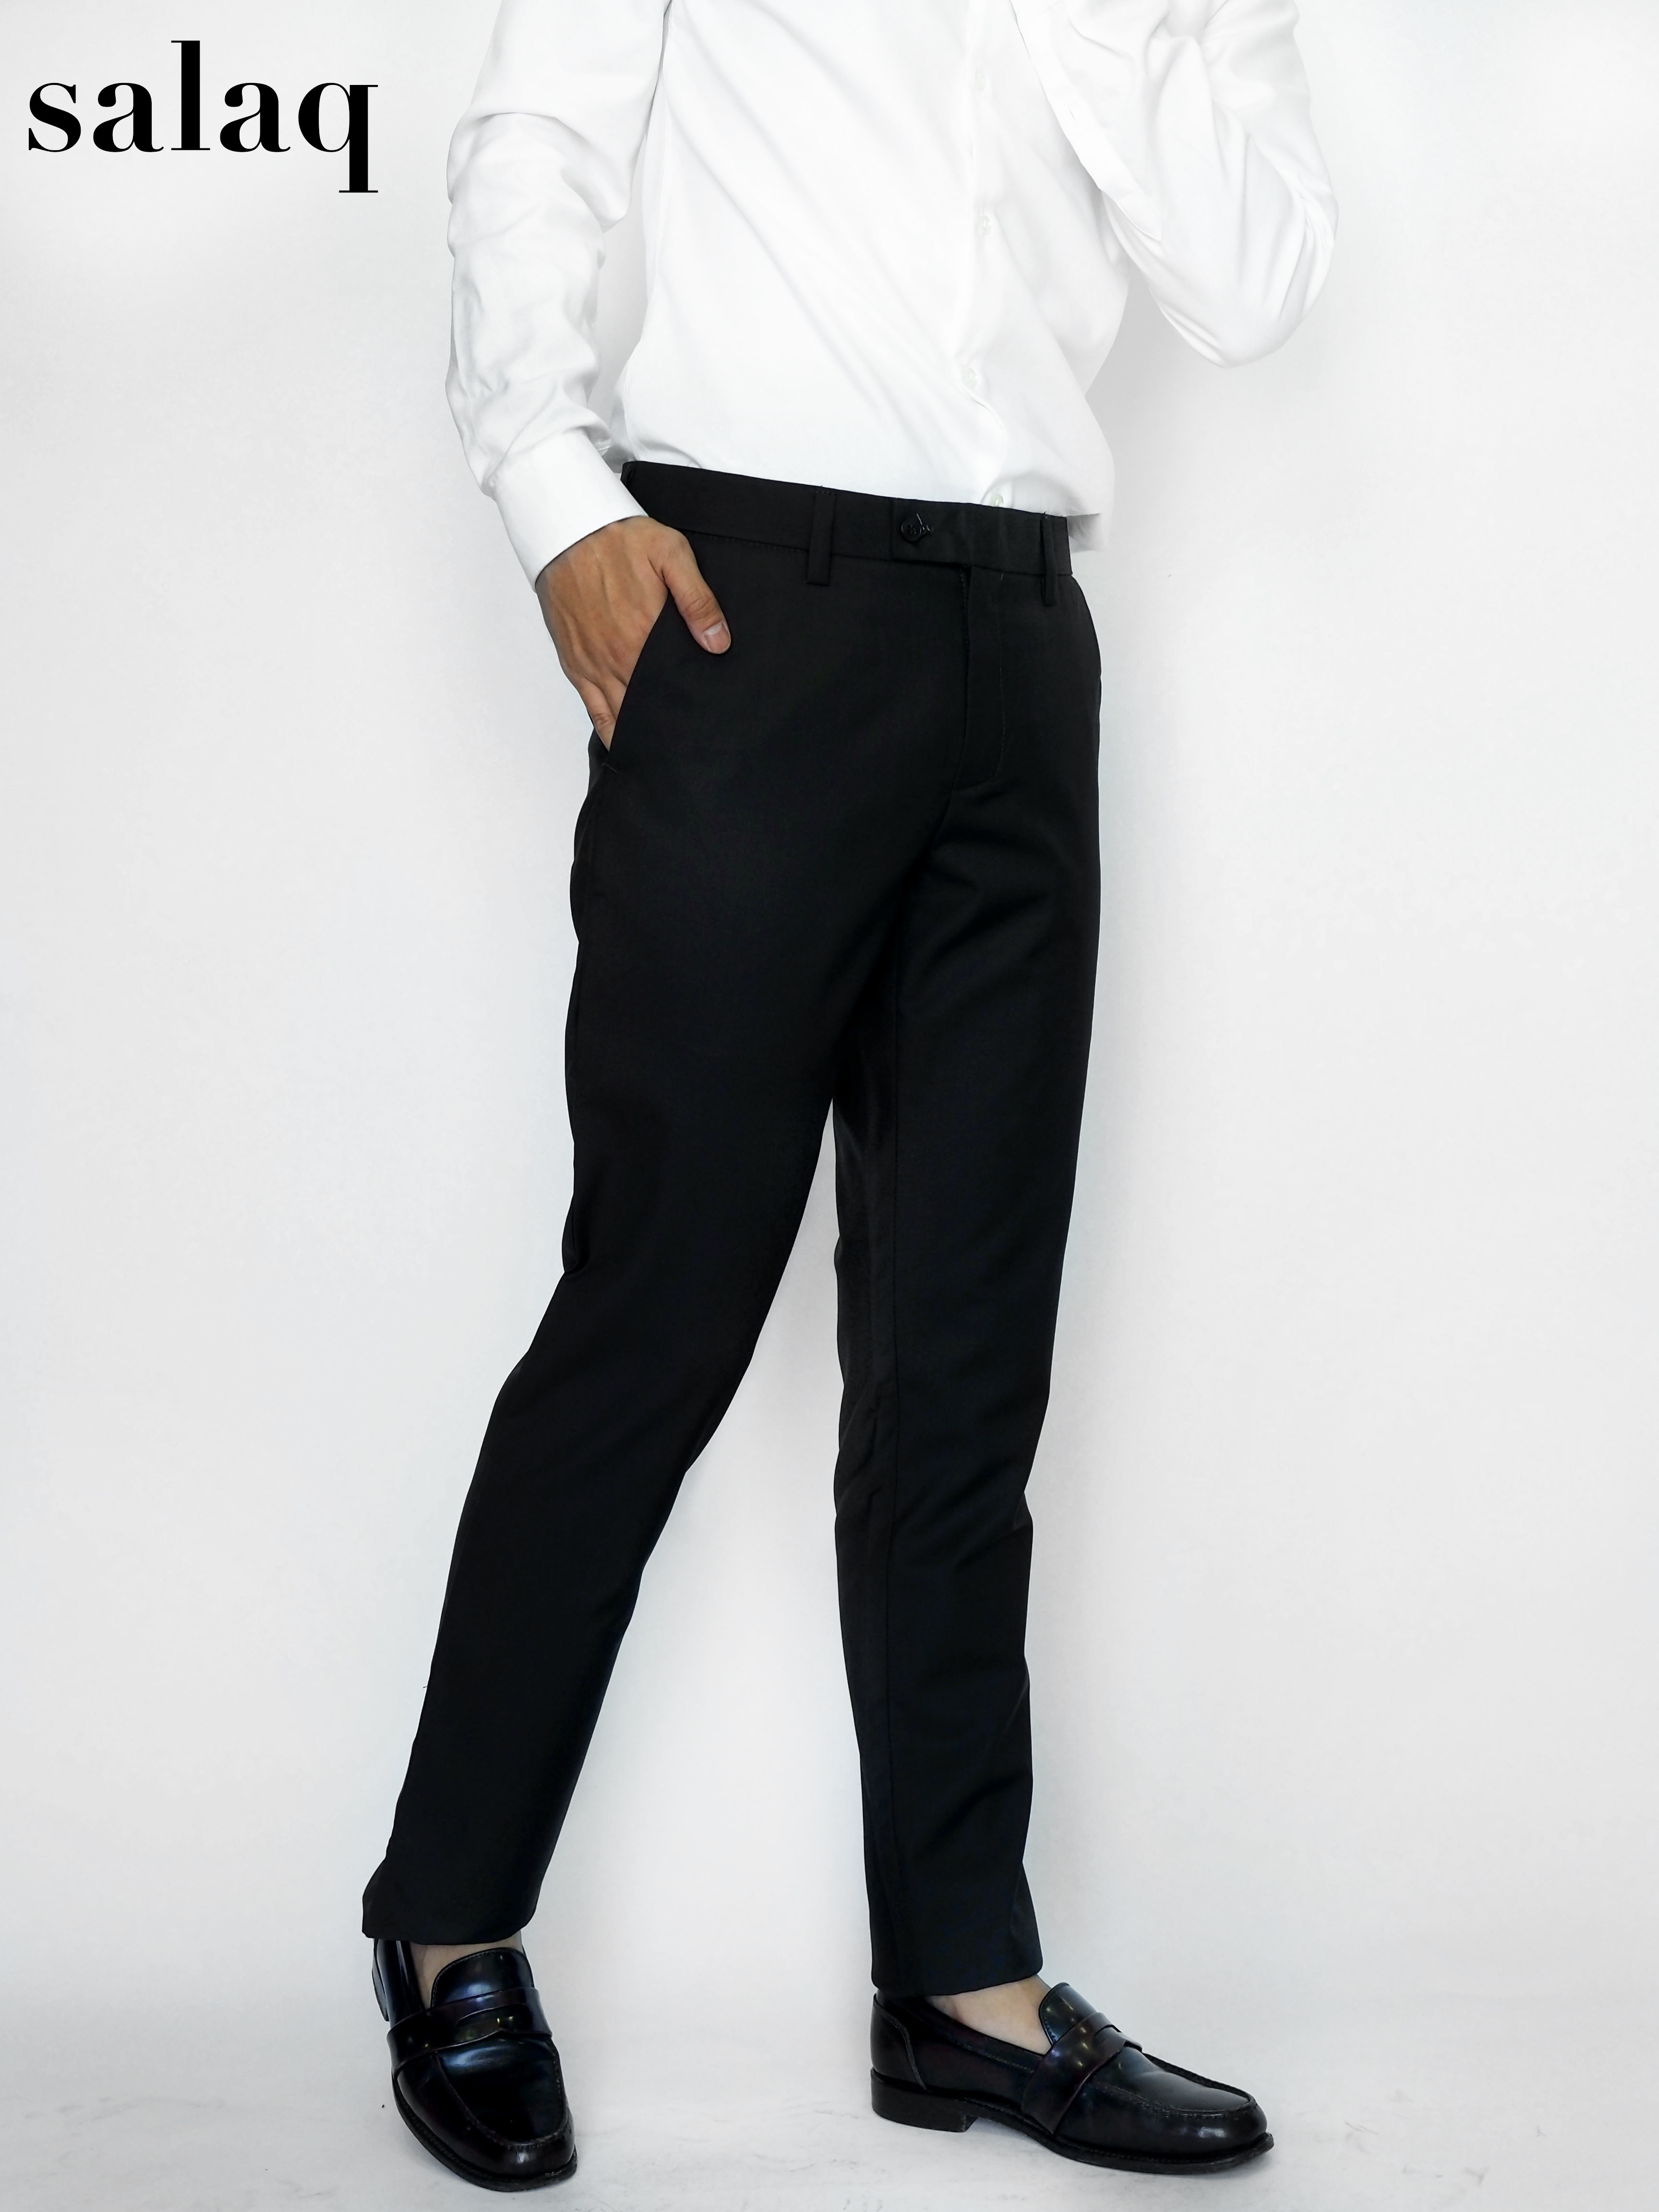 salaq [แจกโค้ดส่วนลด] กางเกงสแล็คทำงาน ผ้าตัดสูททรงกระบอกเล็ก กางเกงขายาว กางเกงสุภาพผู้ชาย  กางเกงทางการ สีดำ